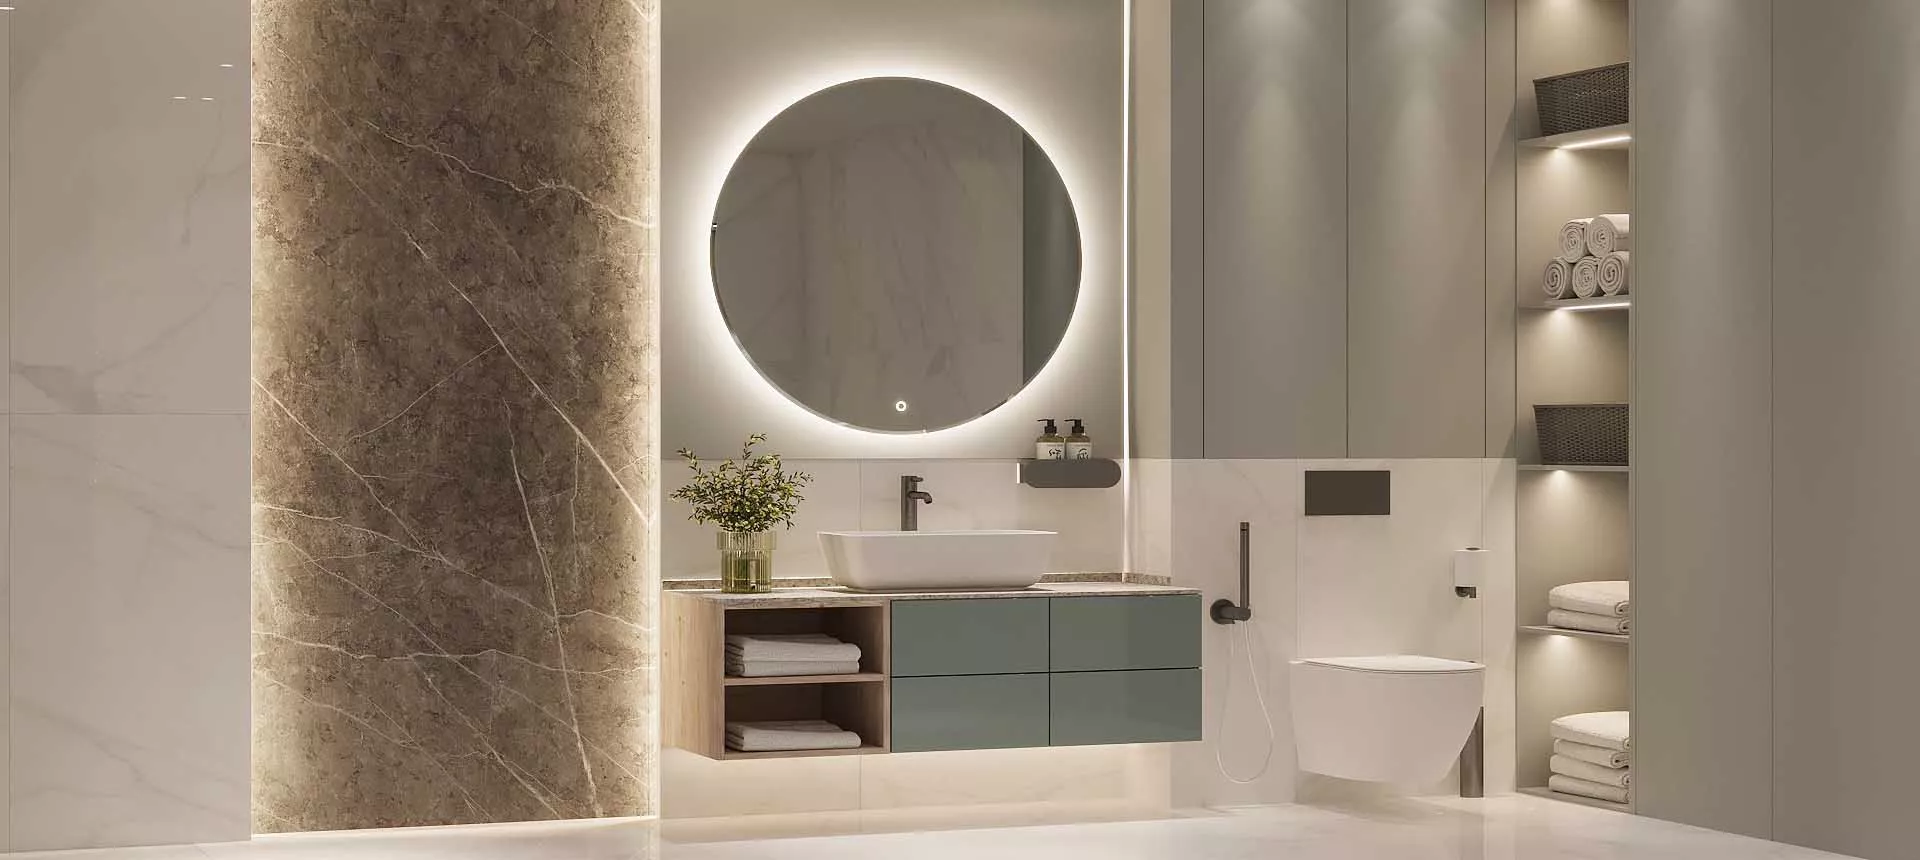 Выбор керамогранита для ванной комнаты: практичность и стиль